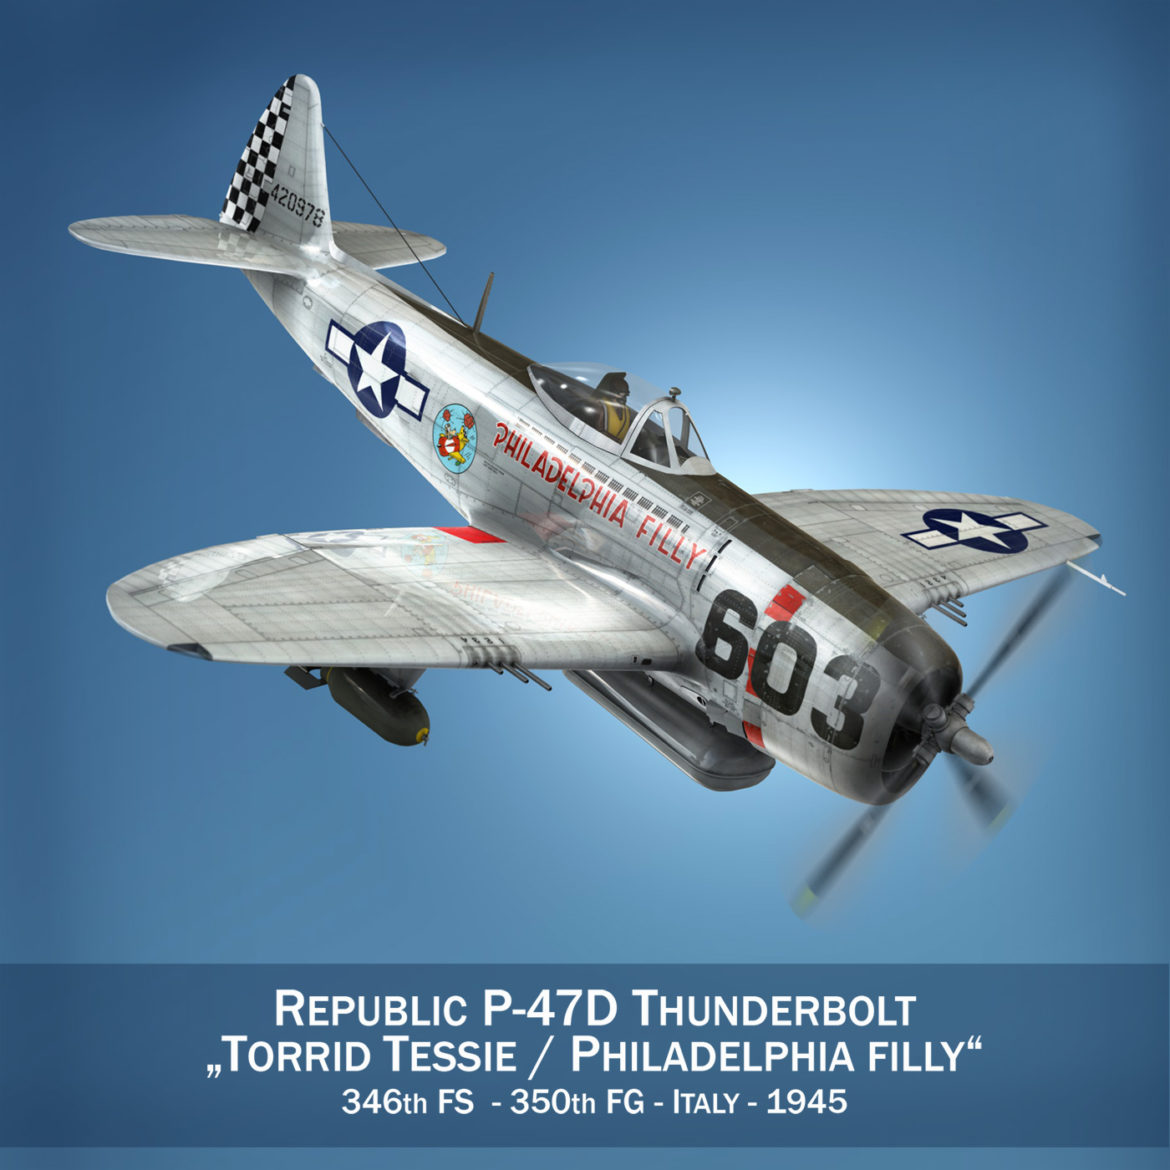 republic p-47d thunderbolt – torrid tessie 3d model 3ds c4d lwo lw lws obj fbx 303862